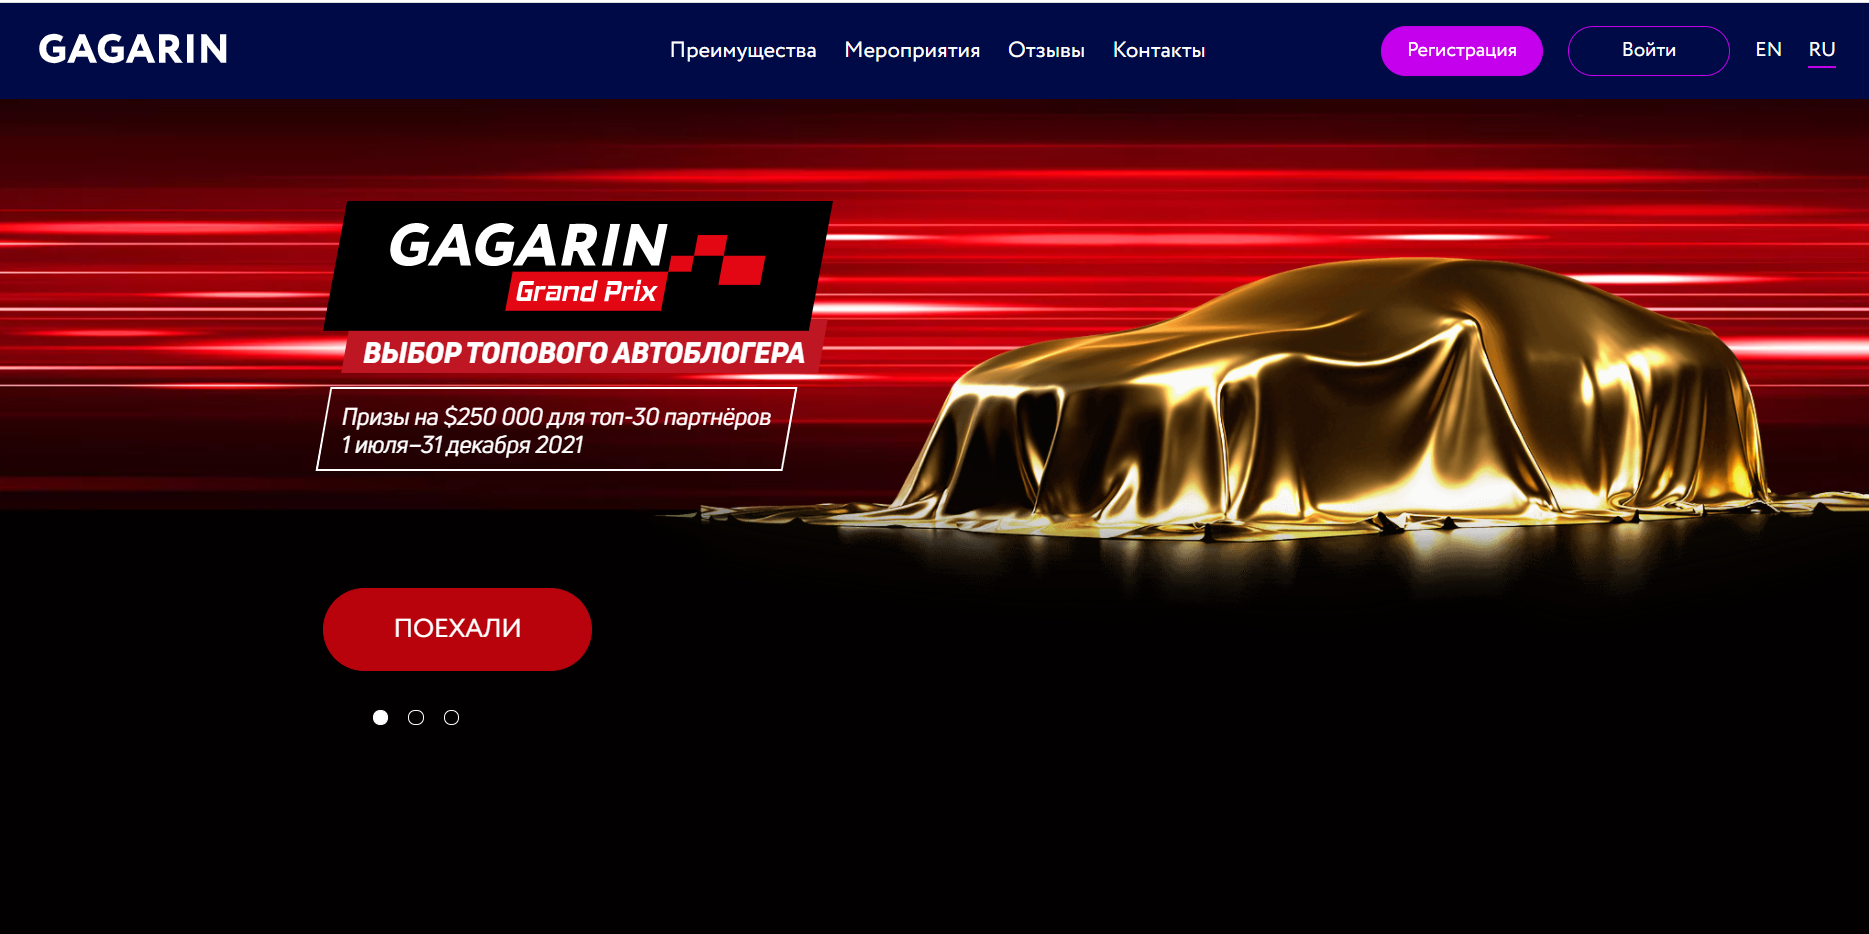 Gagarin Partners — отзывы, обзор партнерской программы